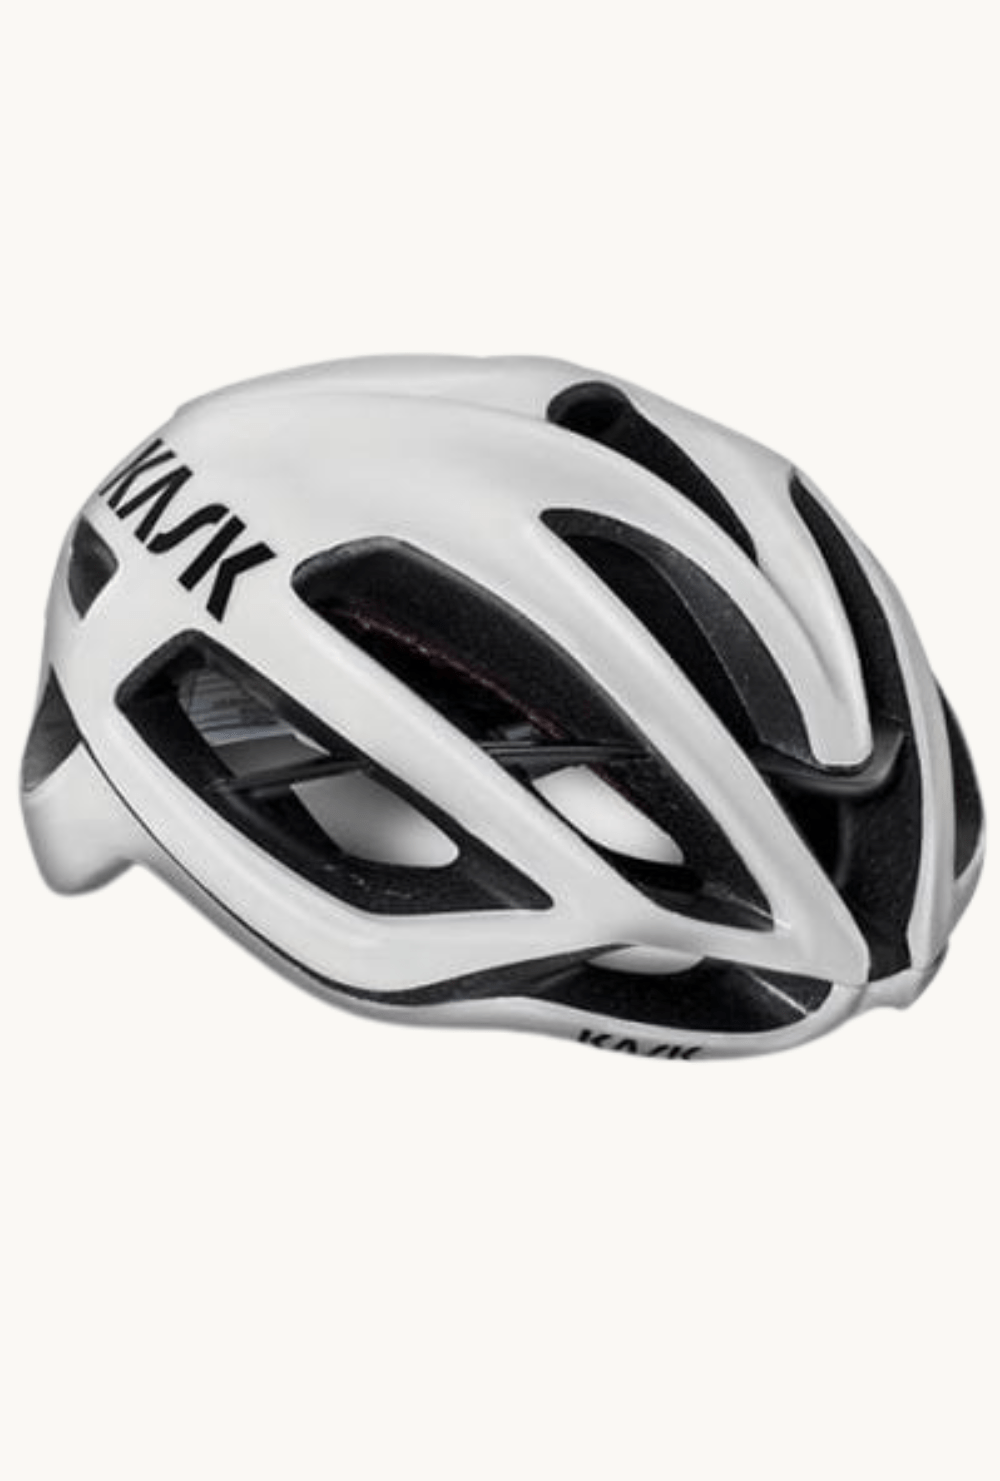 Helmet - Kask Protone Whitesmall (50-56cm) / White